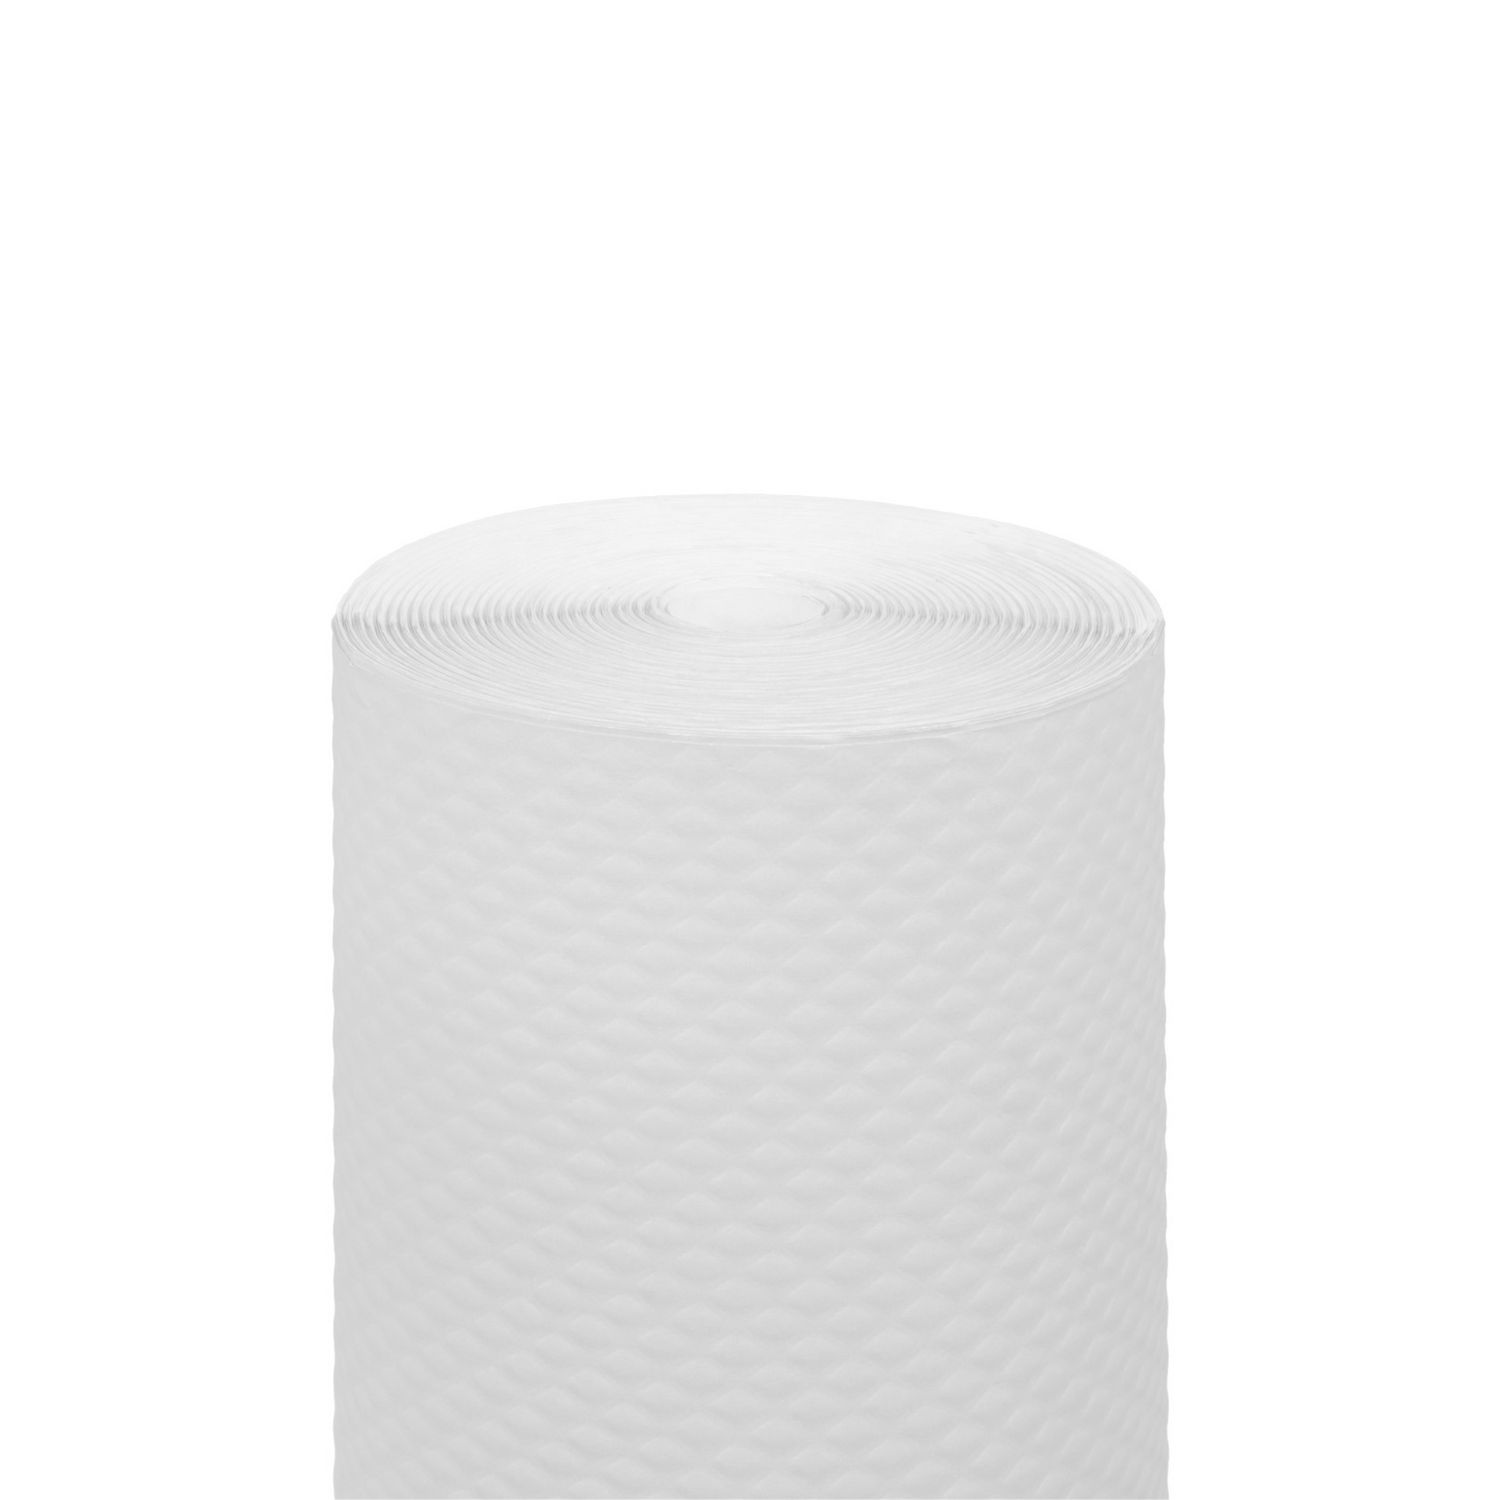 Nappe blanc mat 70 x 110 (papier gaufré 45 gr - PEFC), jetable